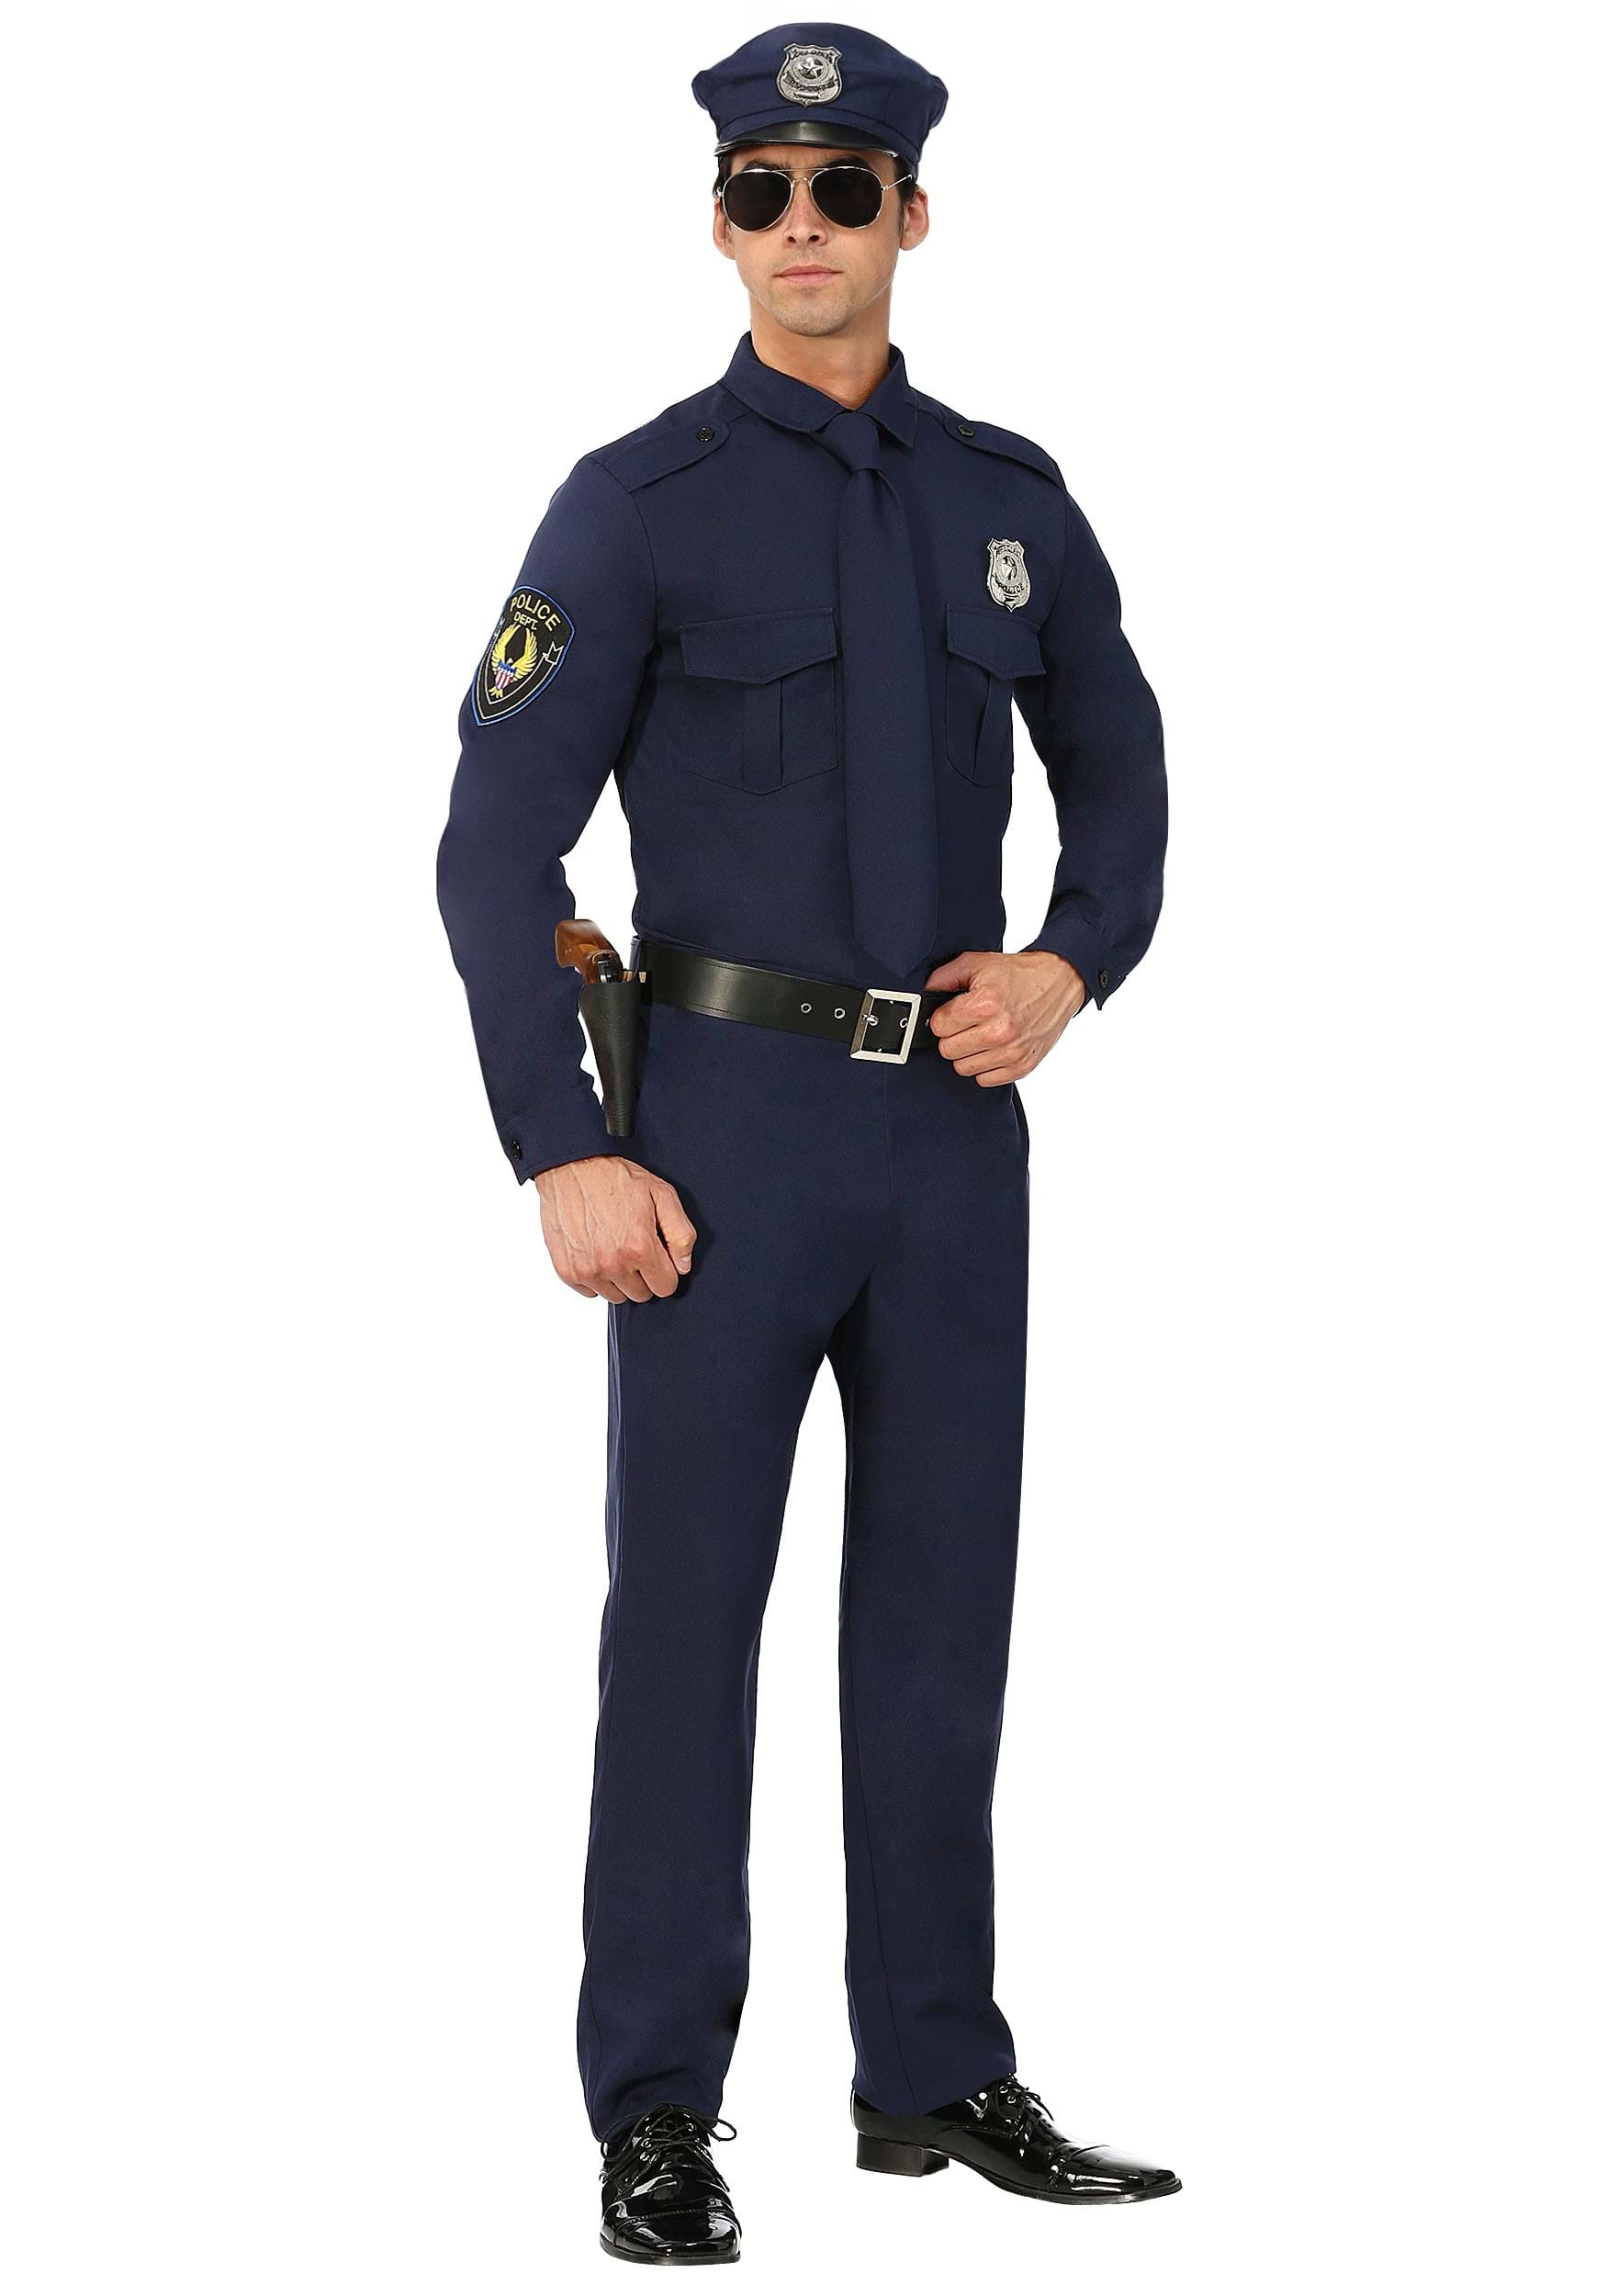 Men's Cop Costume | Adult Halloween Police Costume